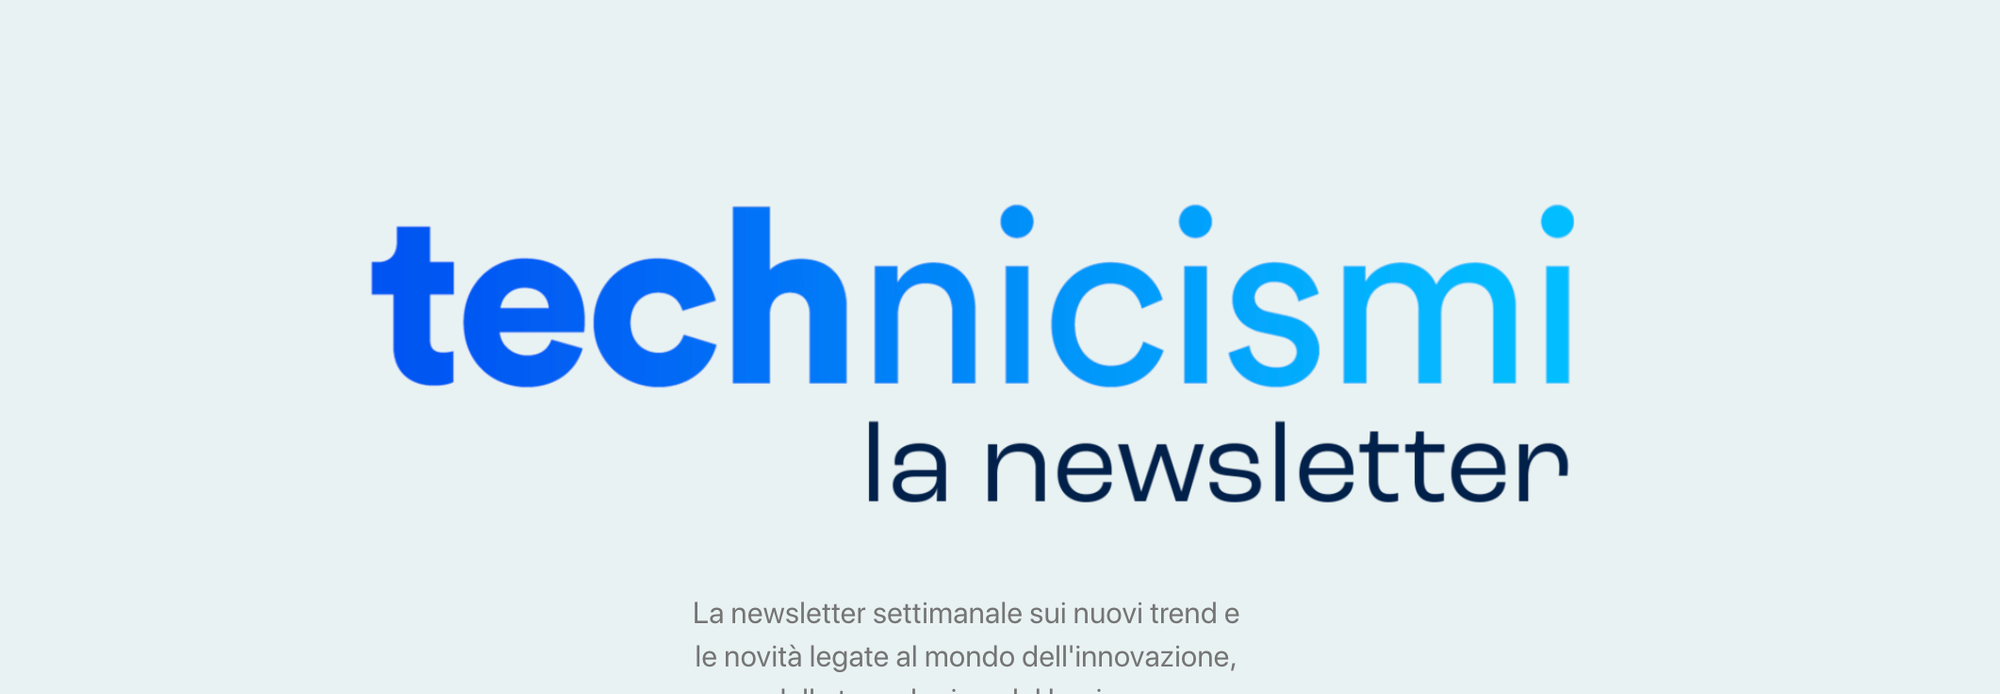 Technicismi, newsletter su tecnologia e innovazione